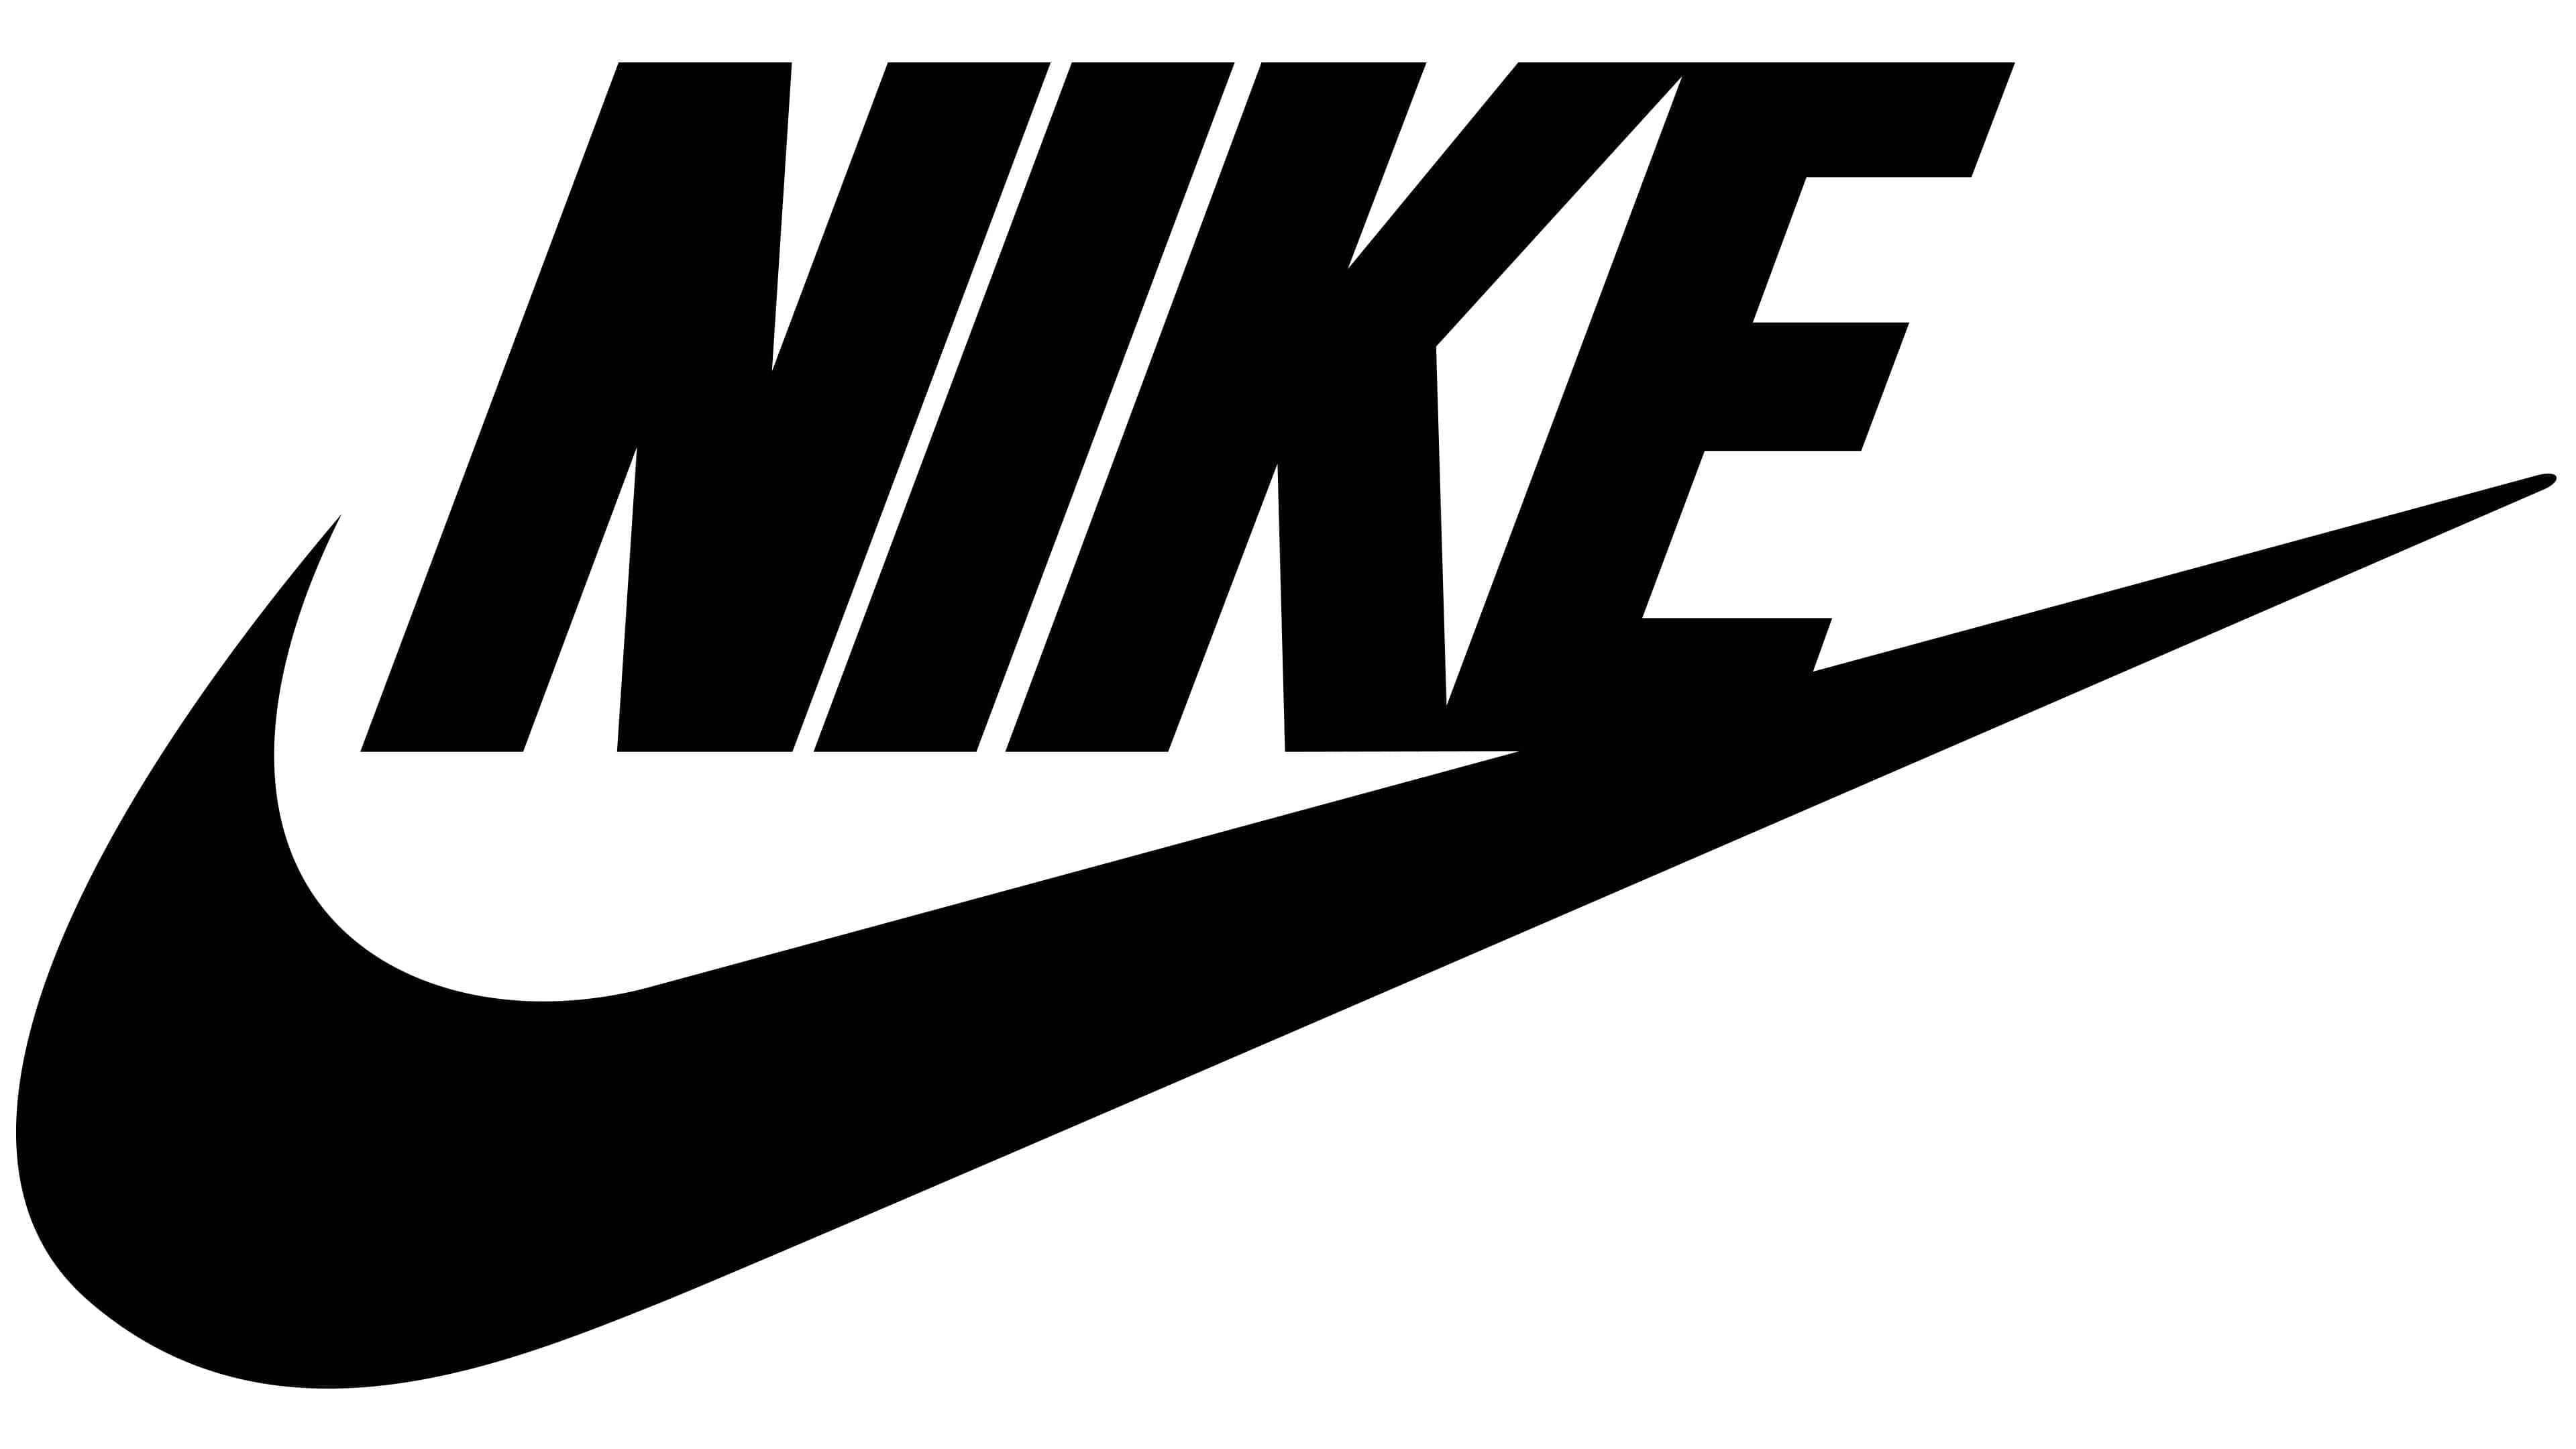 나이키(Nike)